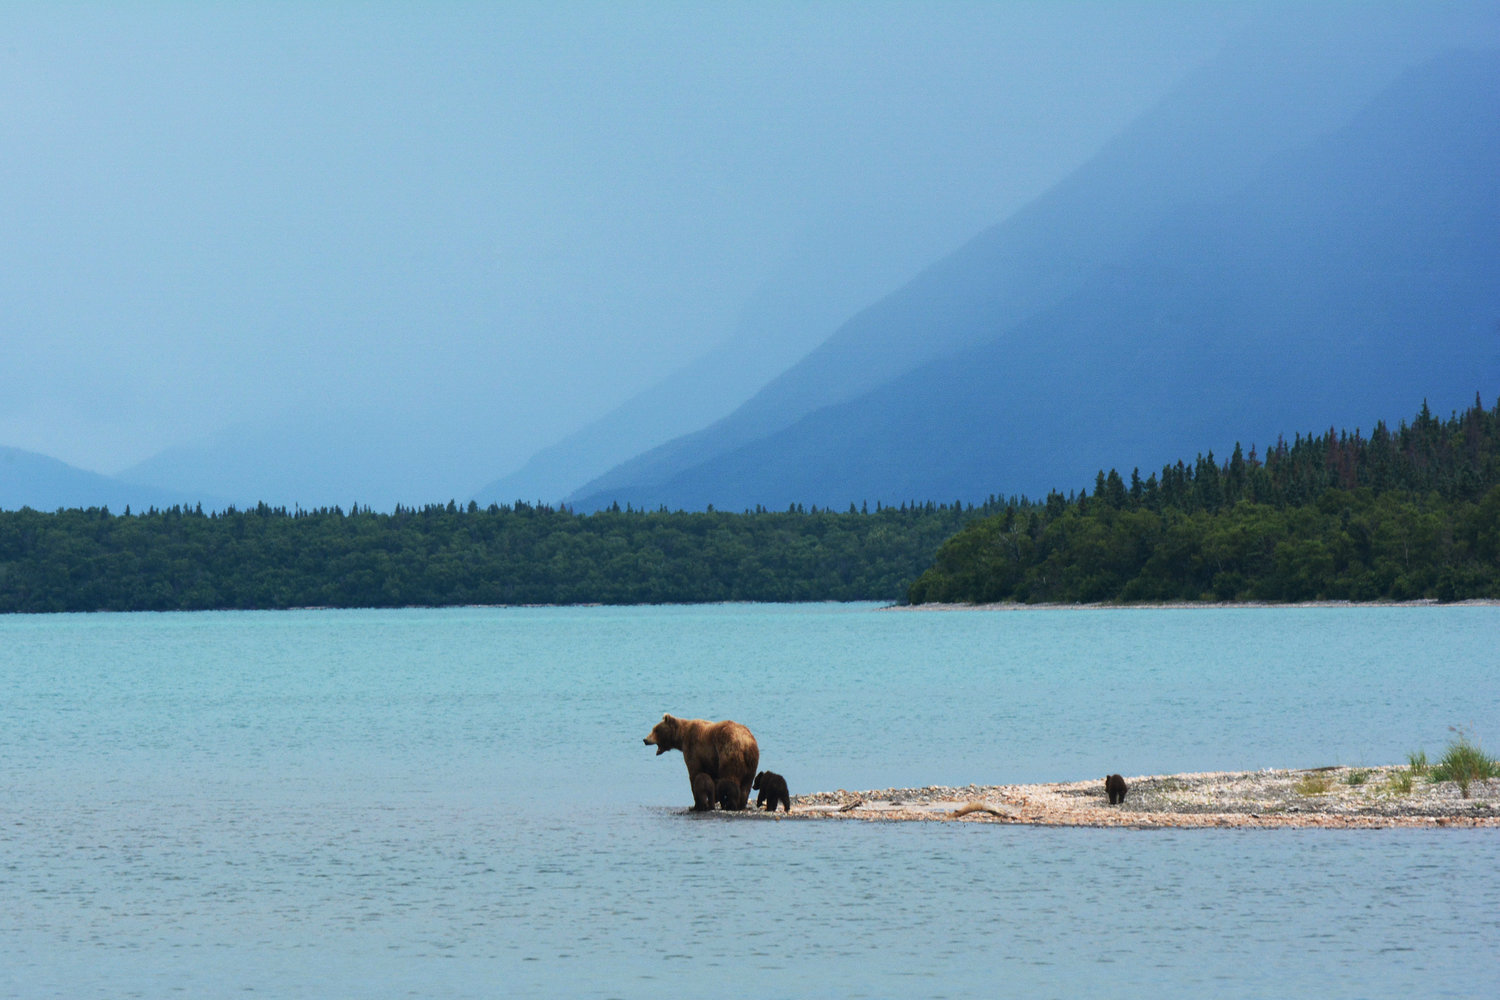 Kenai Brown Bear Committee, Alaska Department of Fish and Game